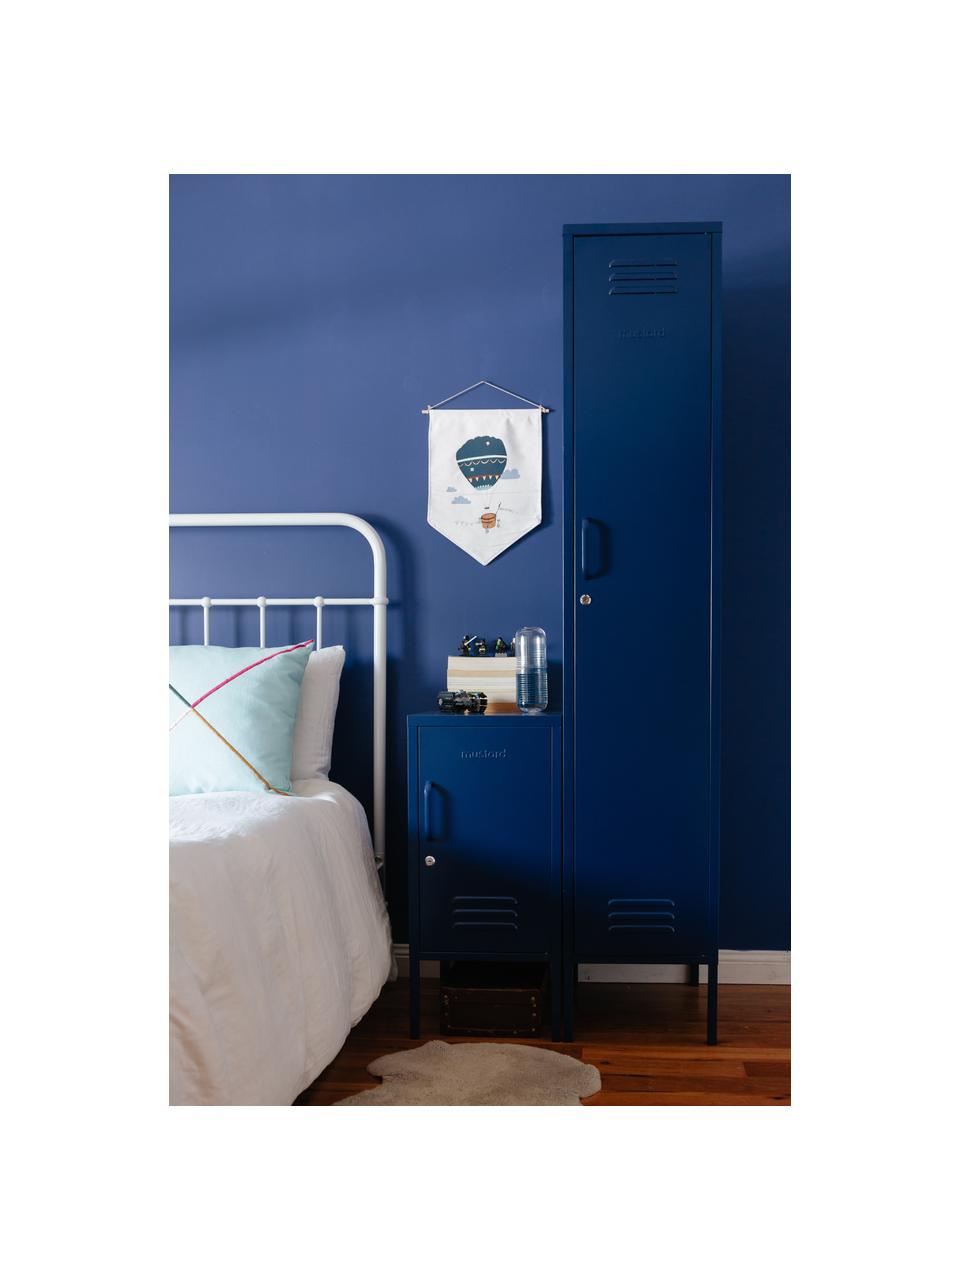 Petite armoire The Skinny, Métal, enduit, Bleu foncé, larg. 35 x haut. 183 cm